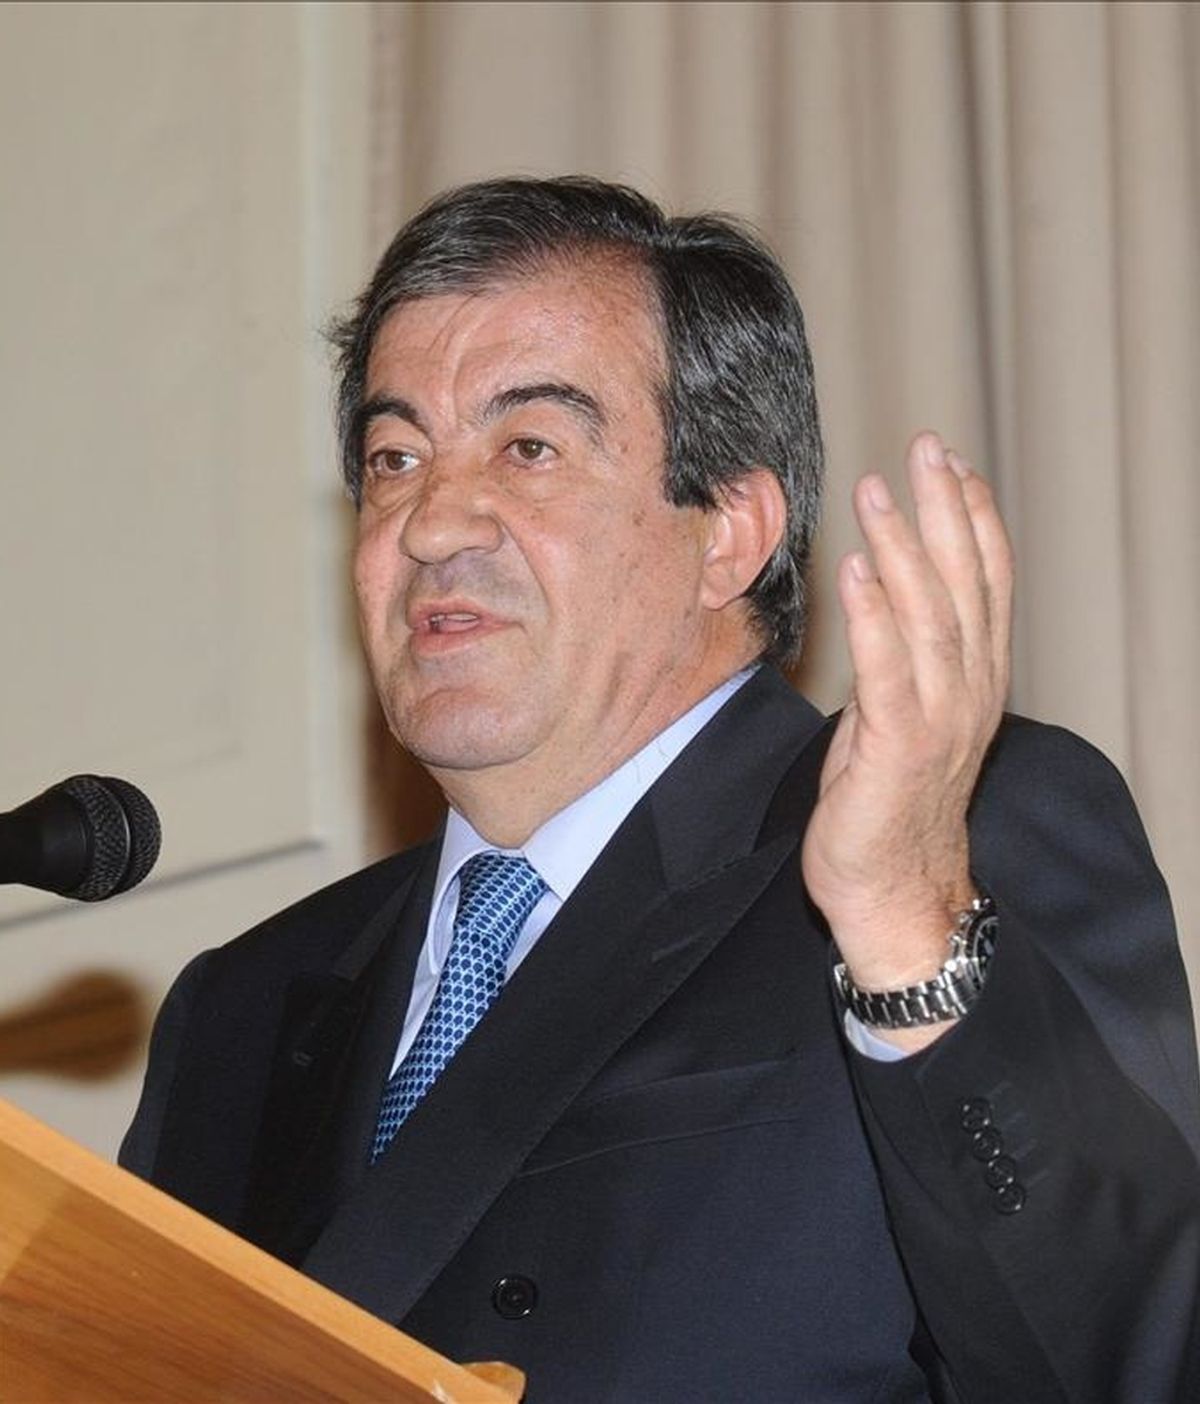 El candidato del Foro Asturias a la Presidencia autonómica en las elecciones del 22 de mayo, Francisco Álvarez-Cascos, durante su intervención ante la comunidad asturiana en Ciudad de México. EFE